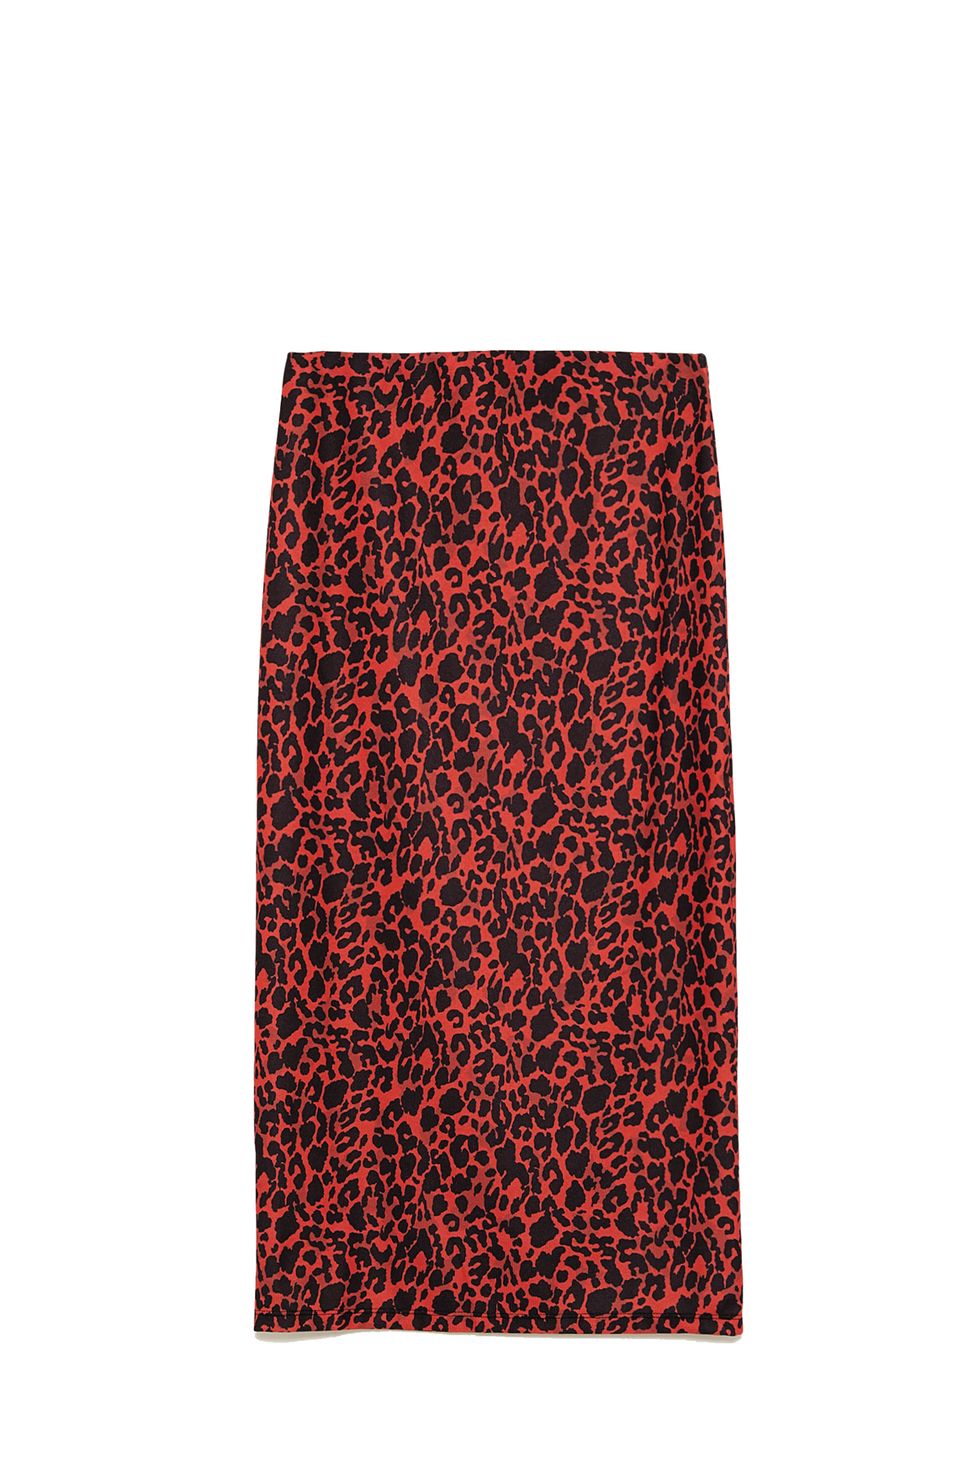 Zara versiona la famosa falda roja de leopardo que se agotó en 48 - Zara versiona mucho más famosa falda roja de leopardo